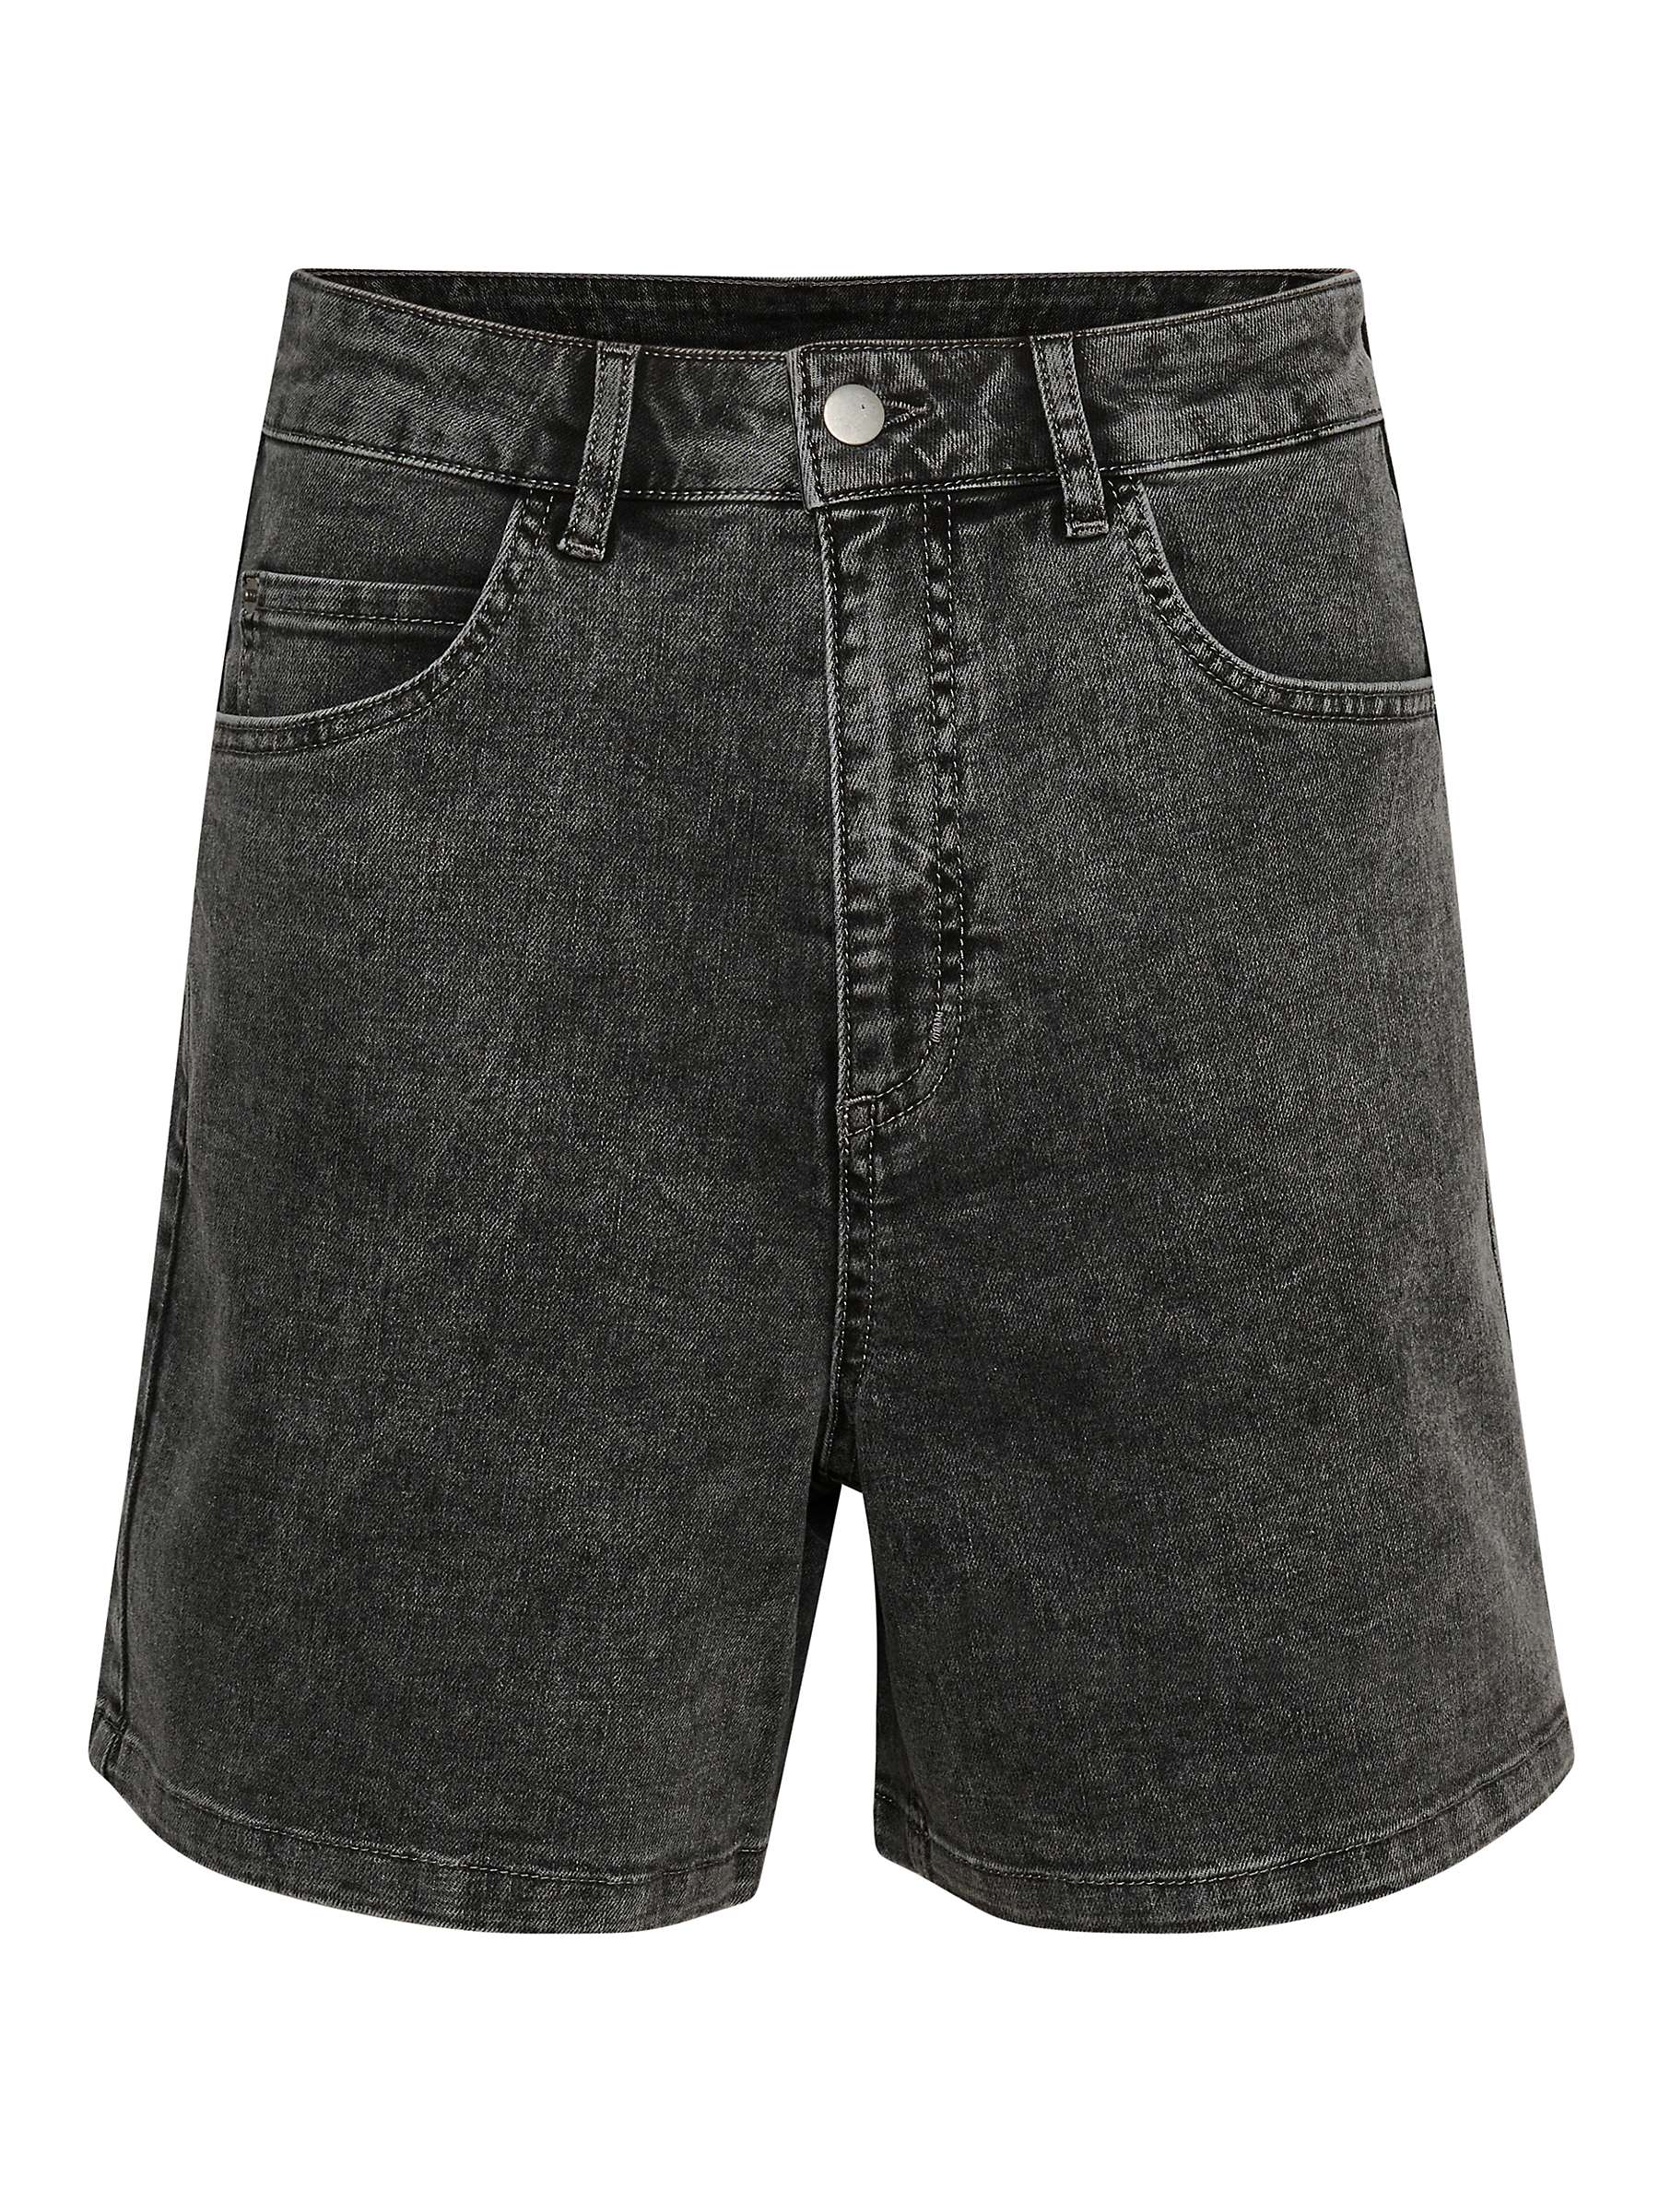 Buy KAFFE Selna Denim Shorts, Black Washed Online at johnlewis.com